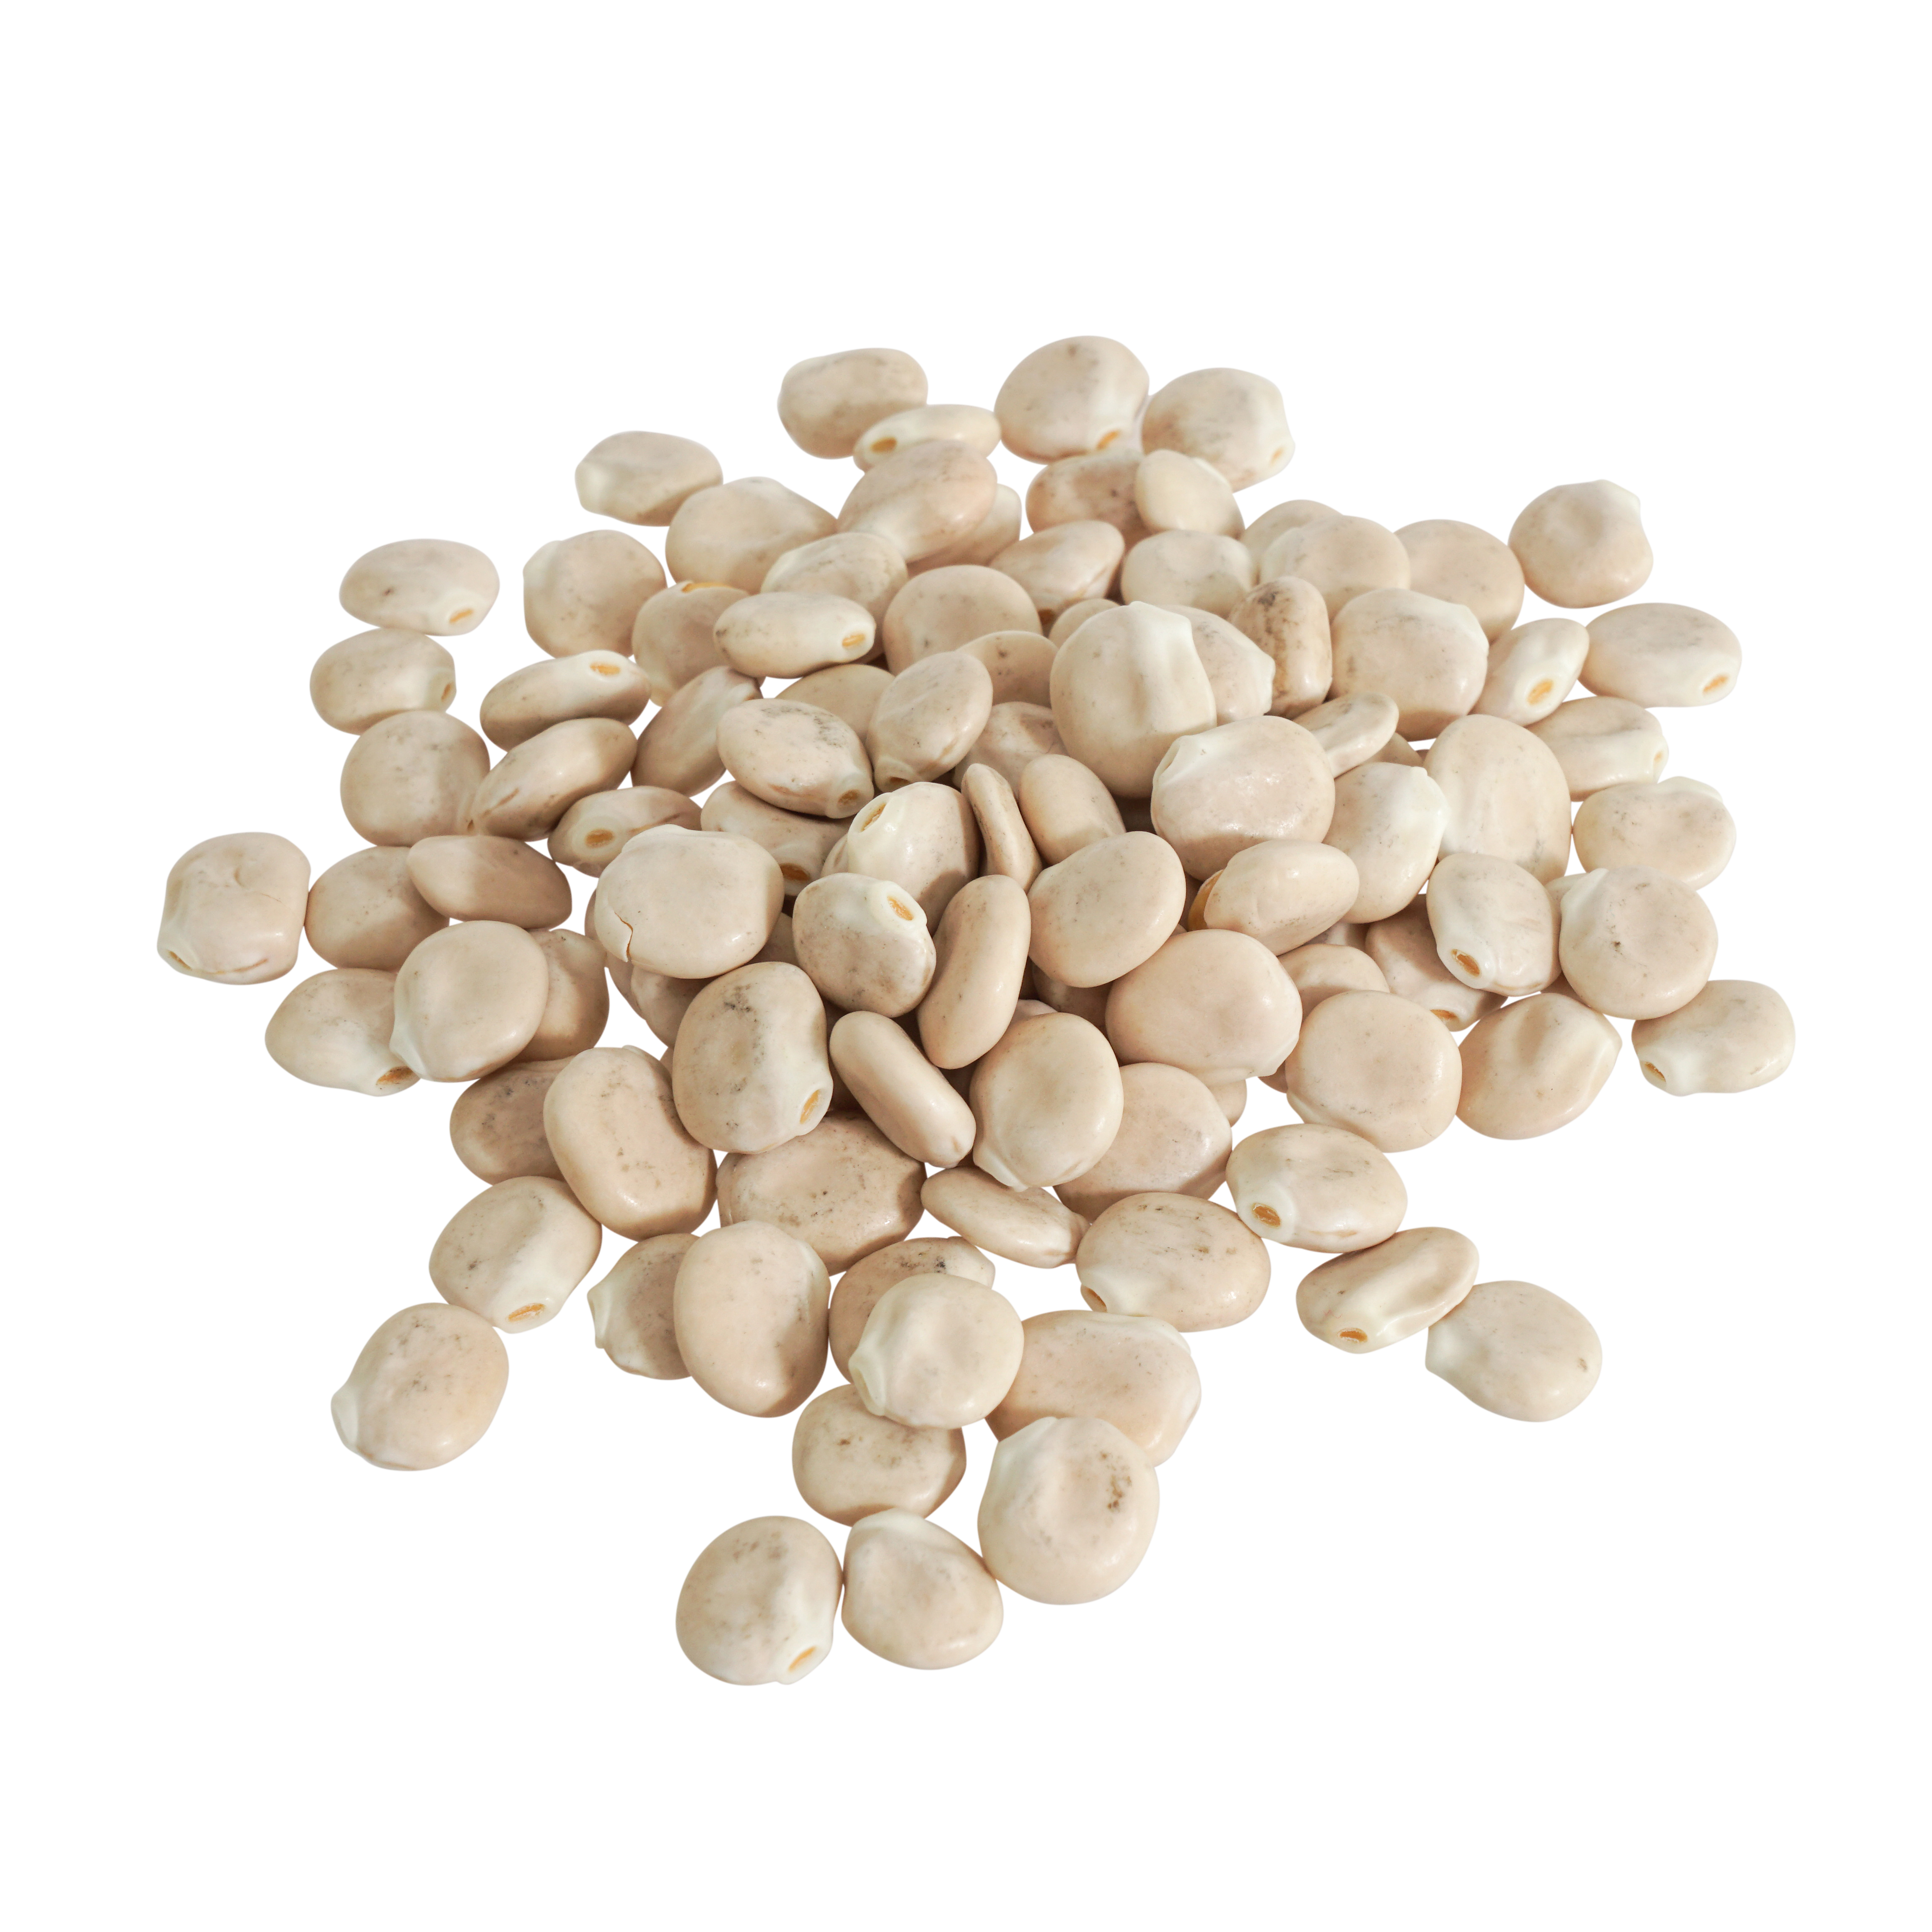 Weiße Lupinen Samen Bio keimfähig 500 g